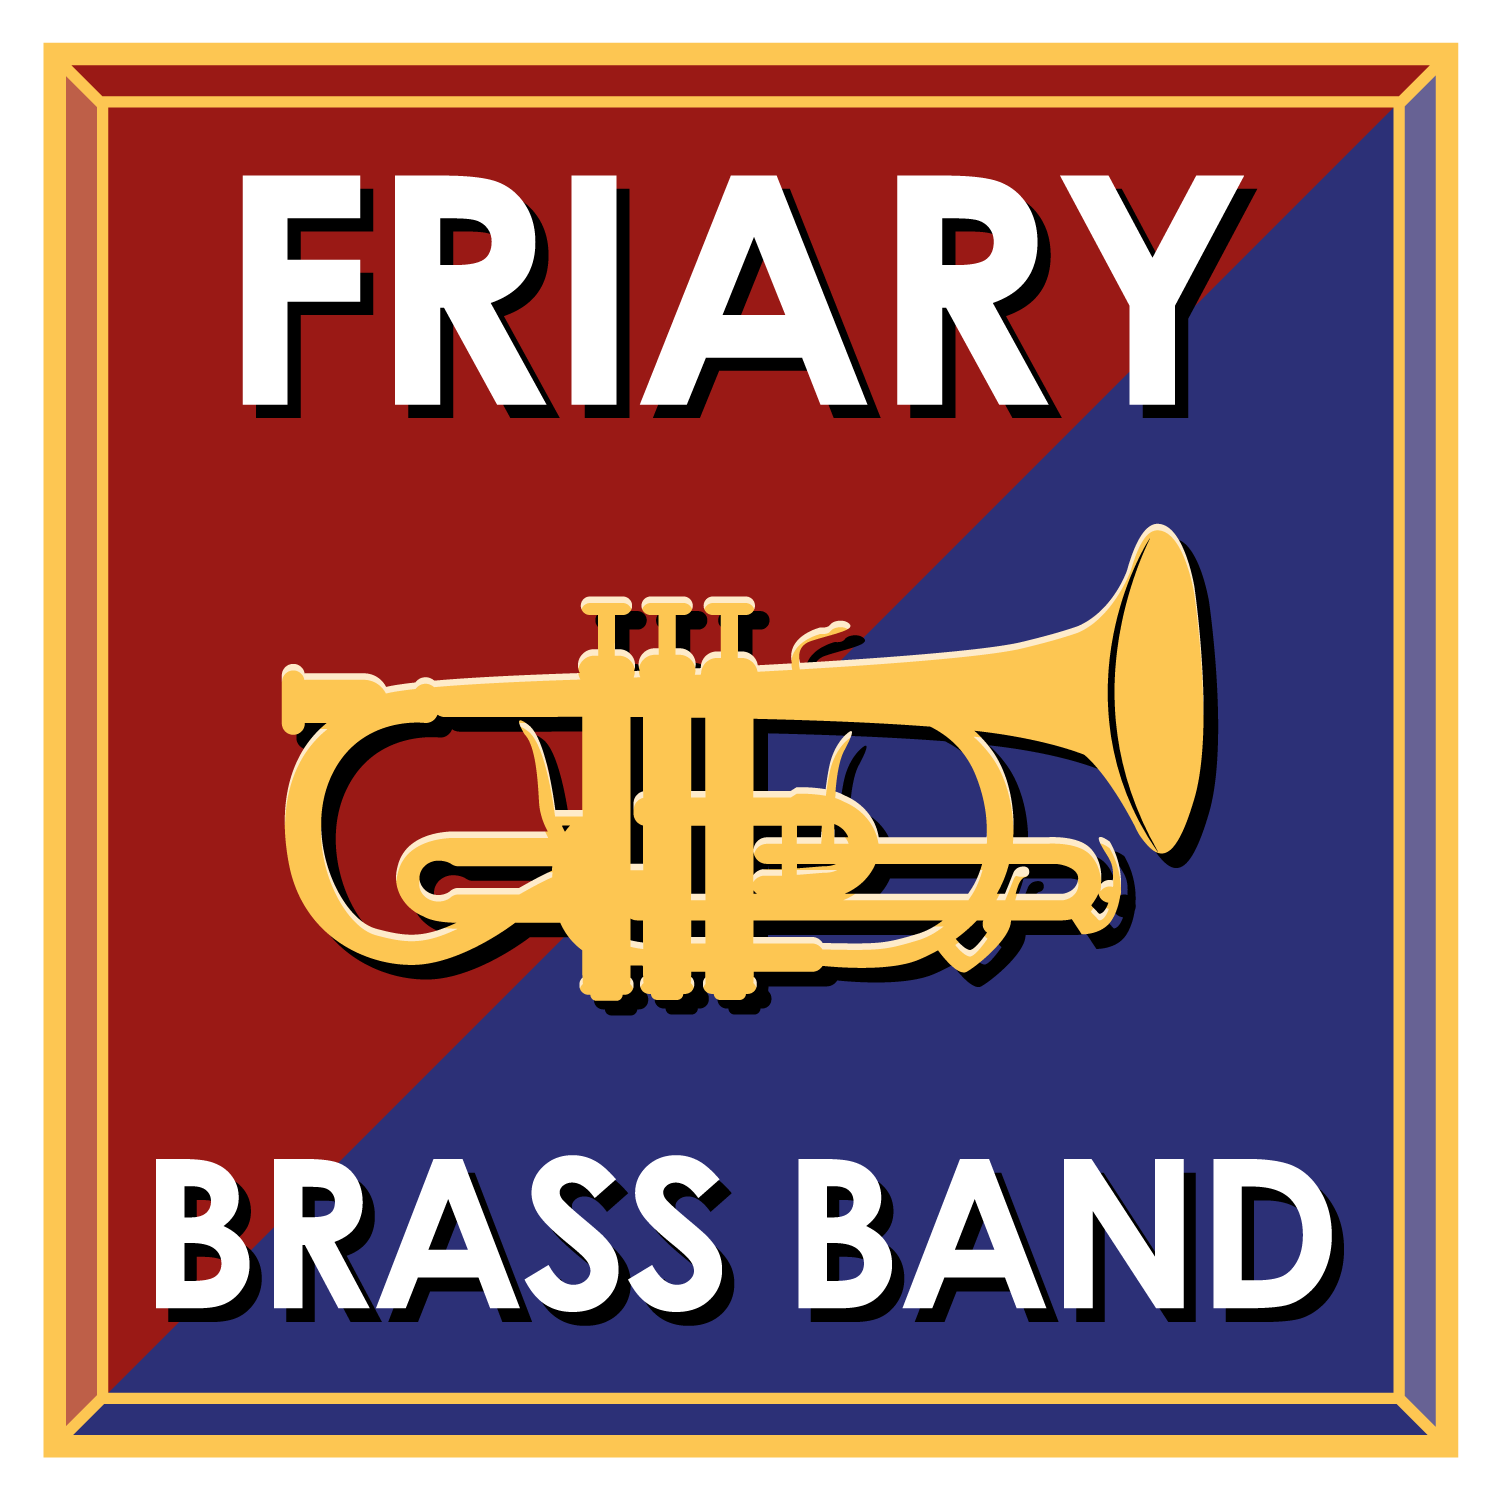 Friary-Brass-Band-logo-March-2018 - Farnham Town Council